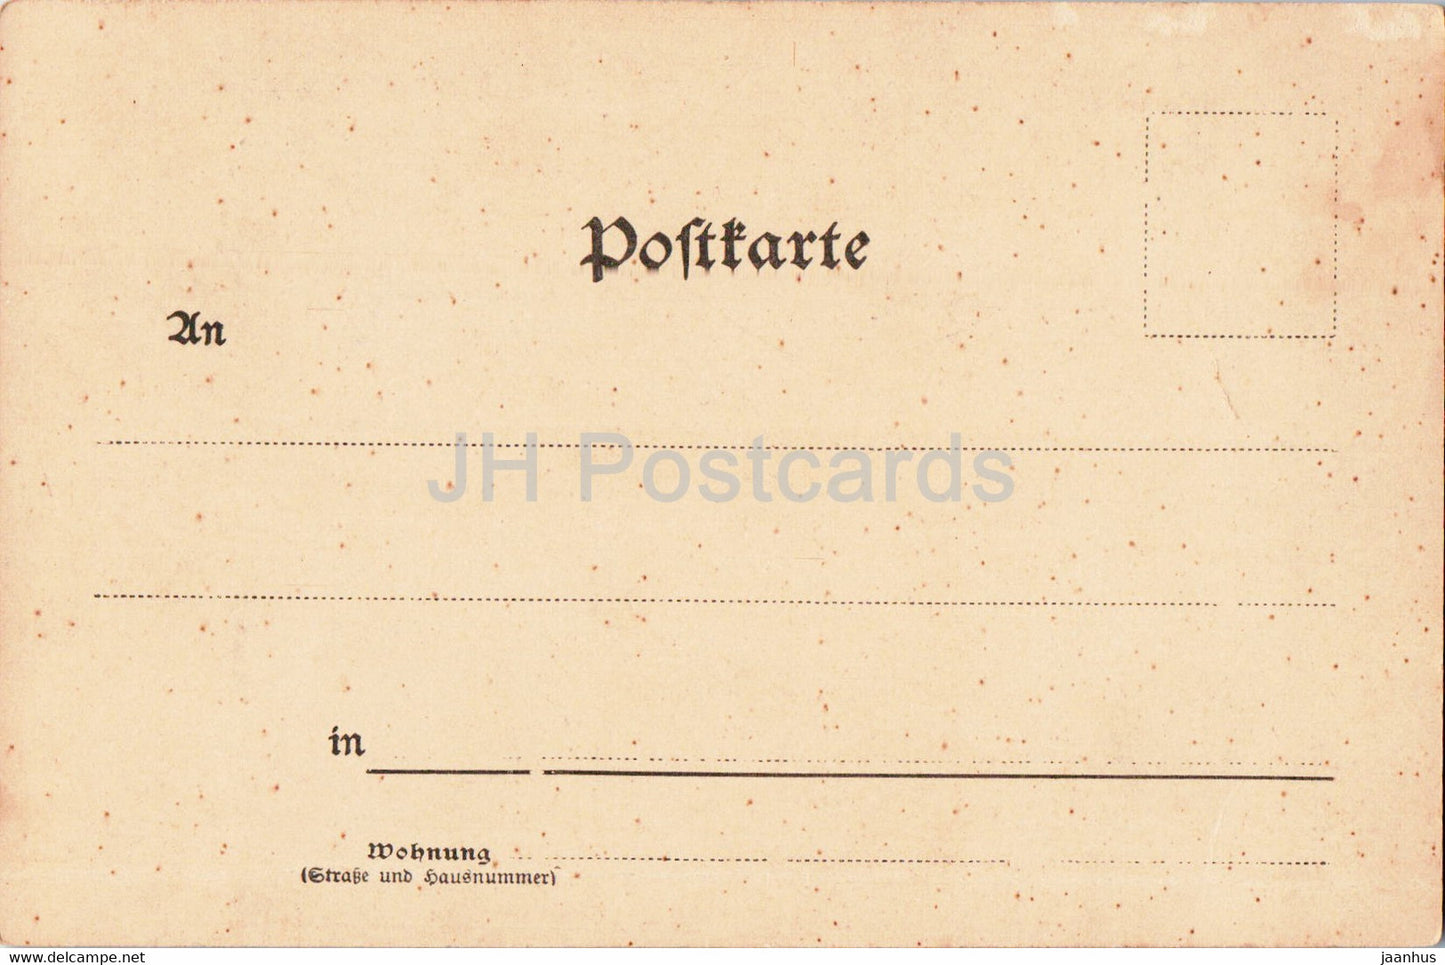 Gruss aus Strassburg i E - Straßburg - Storchennest - Vögel - Storch - alte Postkarte - Frankreich - unbenutzt